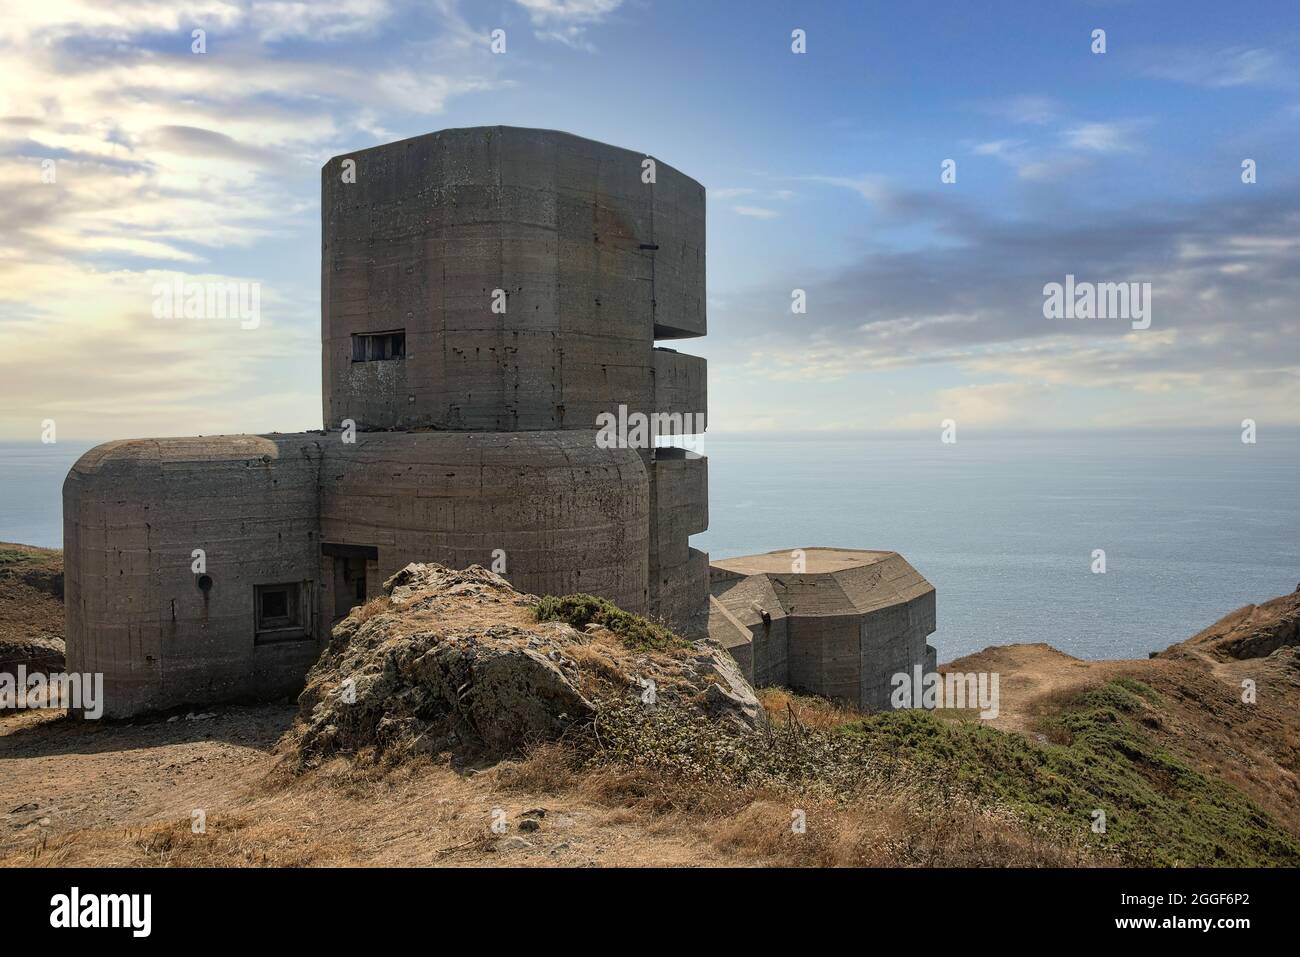 Observación Alemana Bunker construido durante la Guerra Mundial de 2 en la isla de Guernsey, una de las Islas del Canal en el Canal de la Mancha. Foto de stock